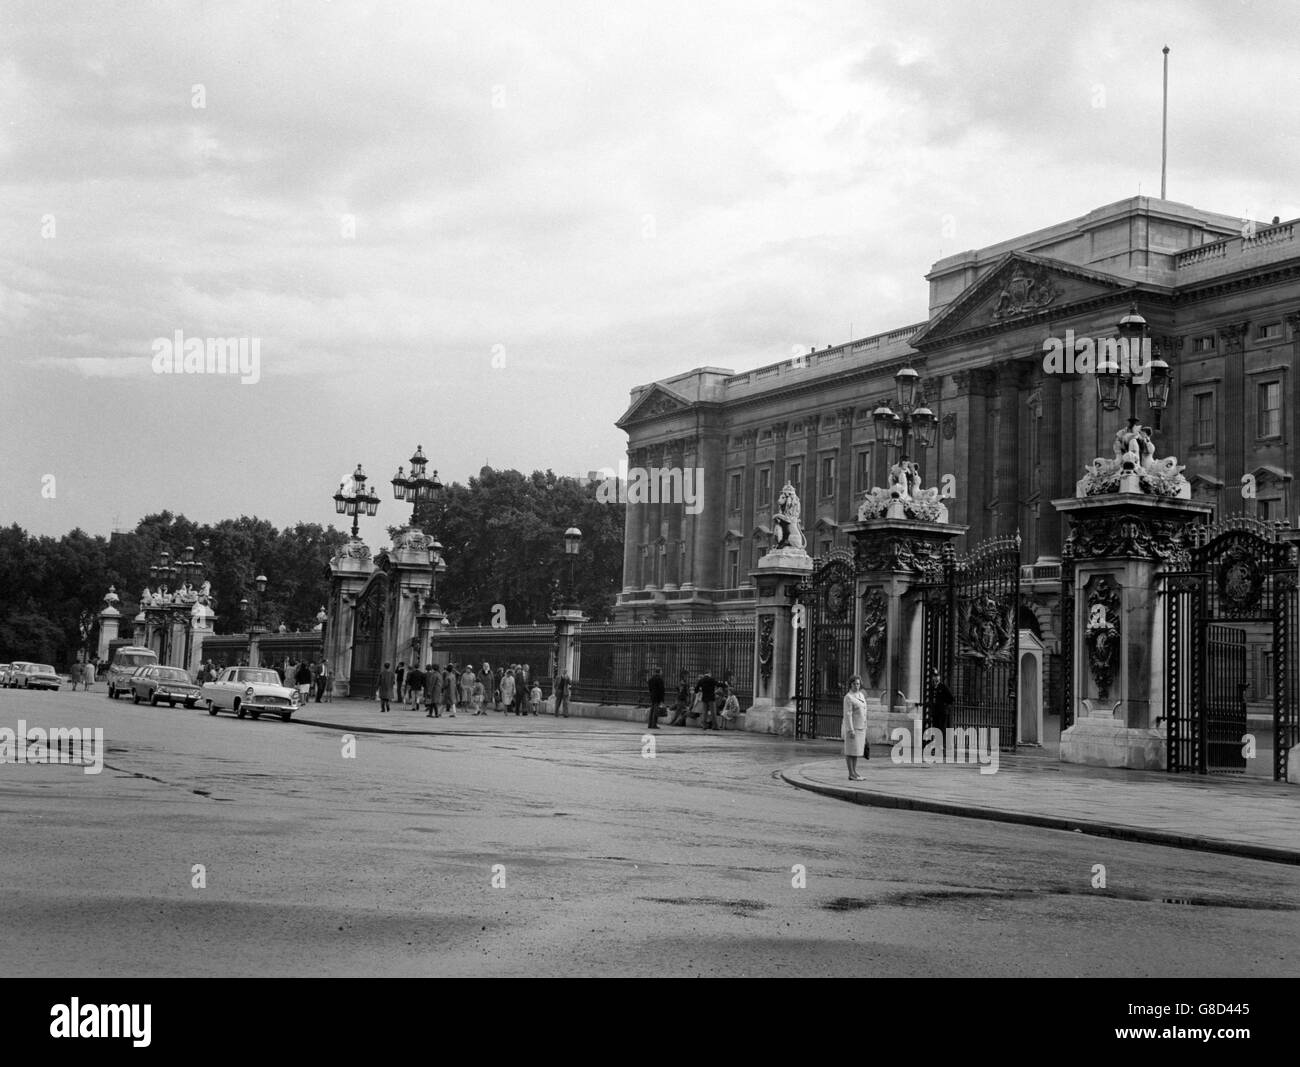 Royalty - Buckingham Palace - London. Buckingham Palace. Stock Photo